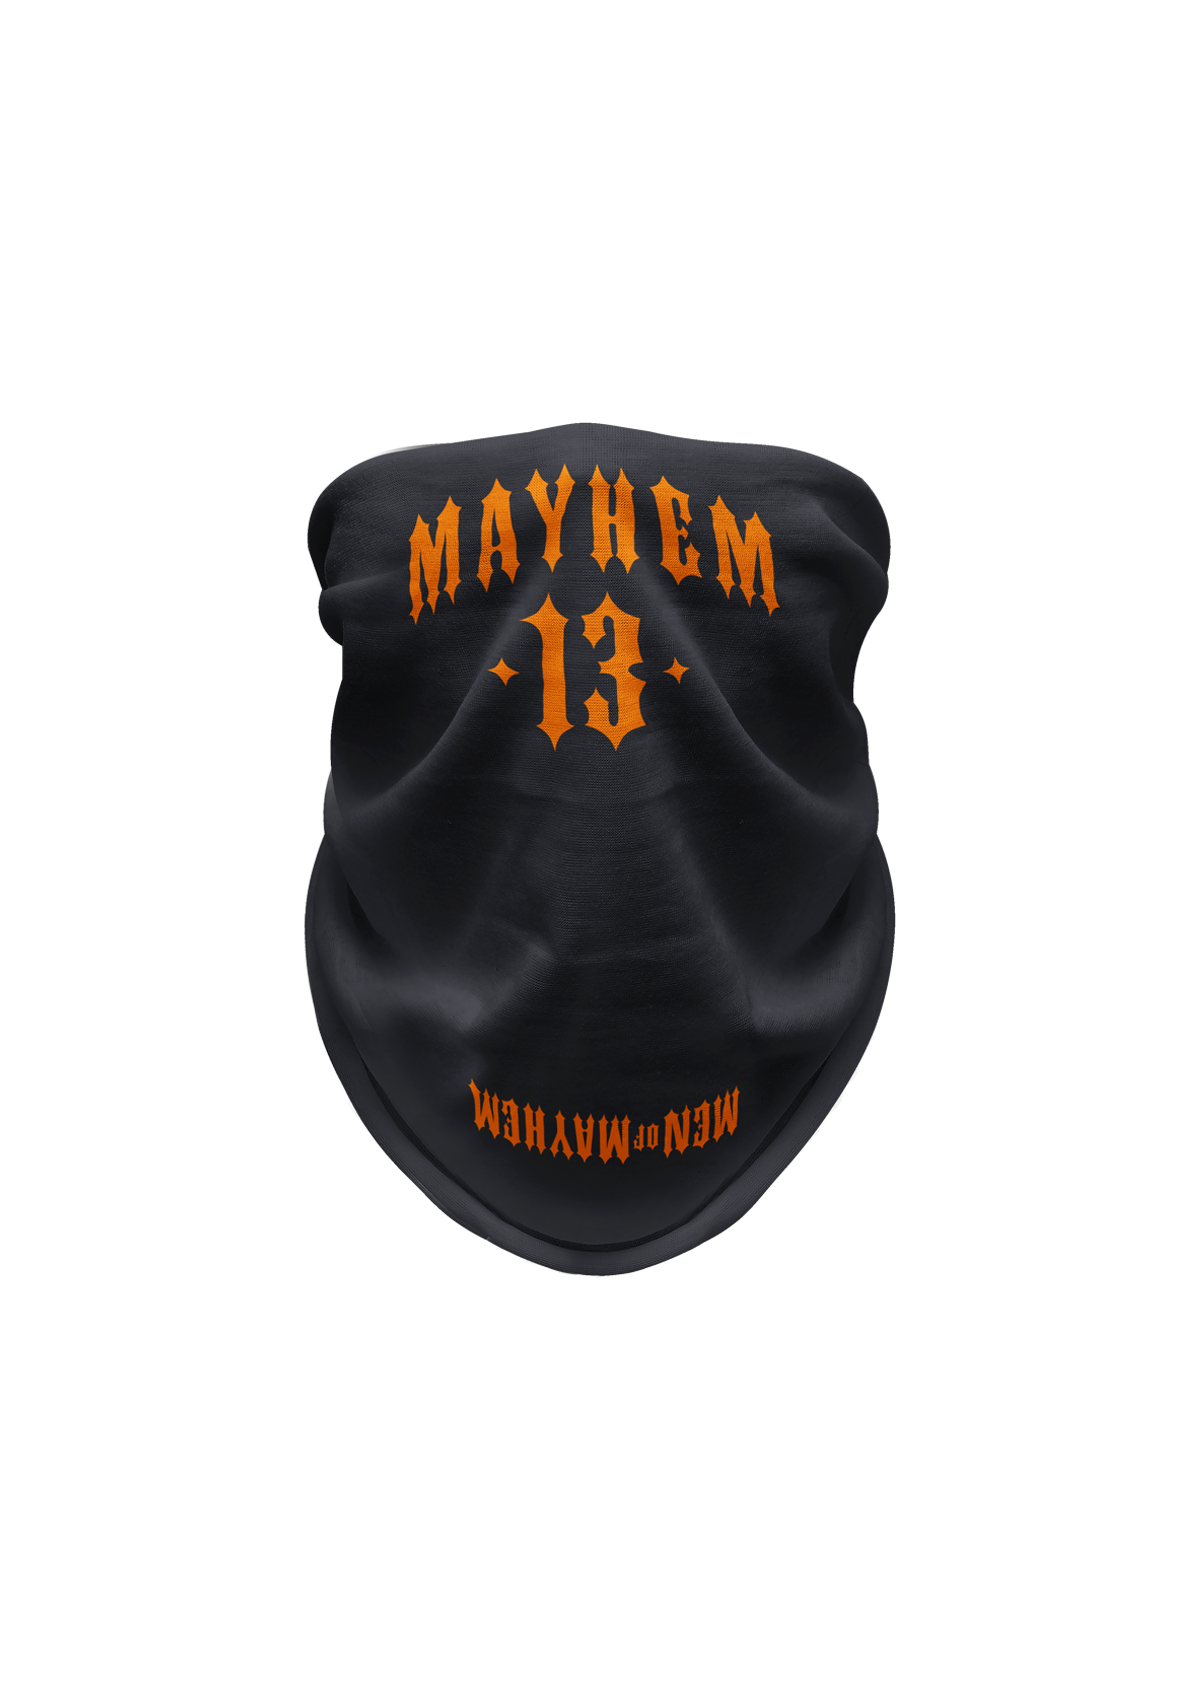 Tube Mayhem 13 G/O